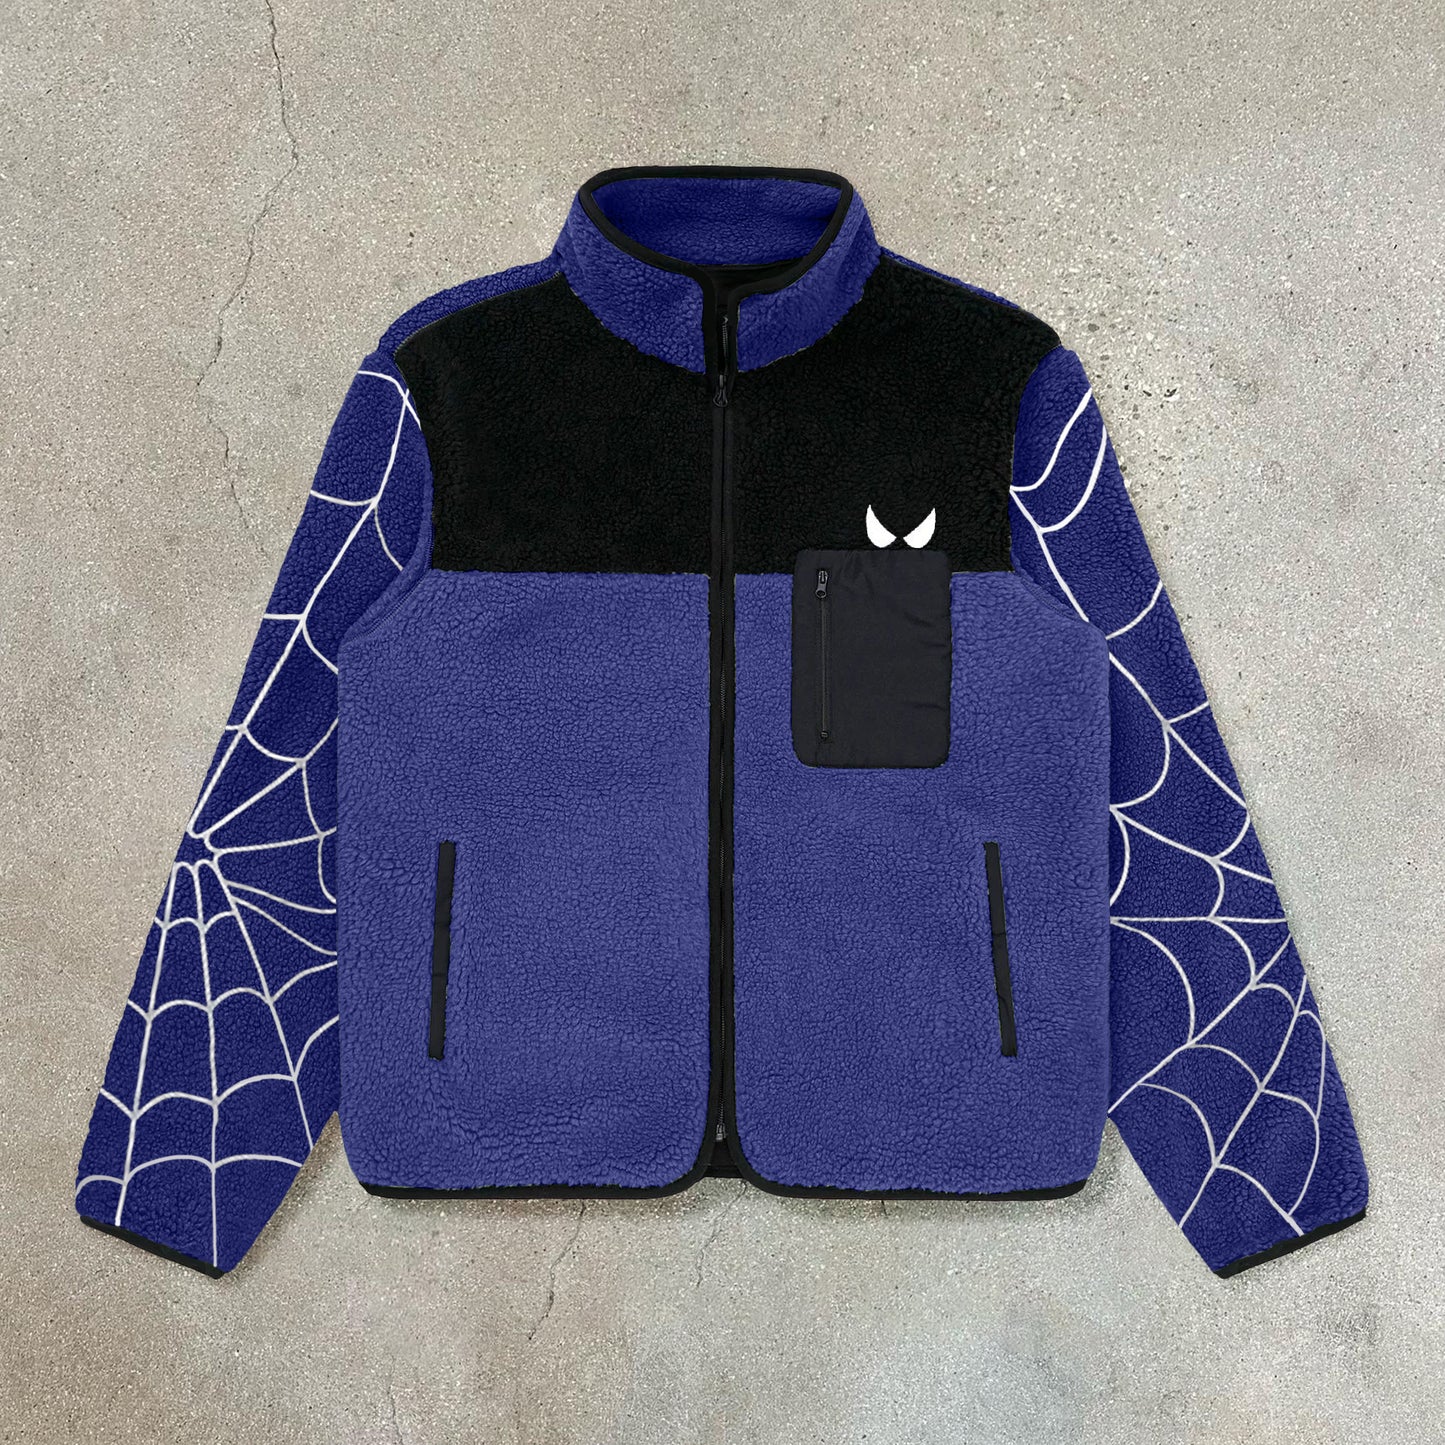 Spider web trendy polar fleece jacket